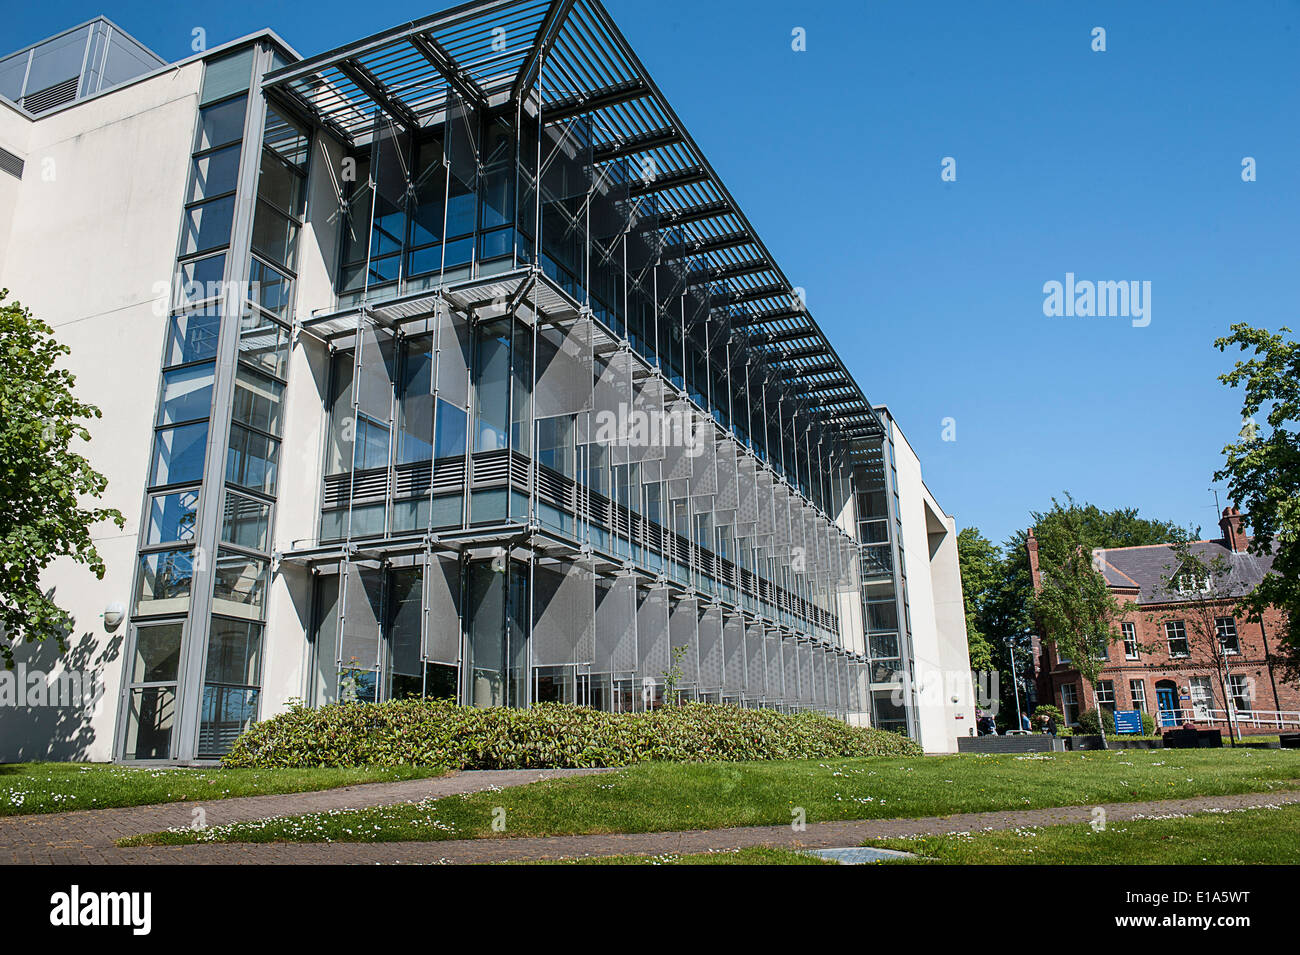 University of Ulster, Campus Magee, Biblioteca Edificio, Derry, Londonderry, Irlanda del Nord Foto Stock